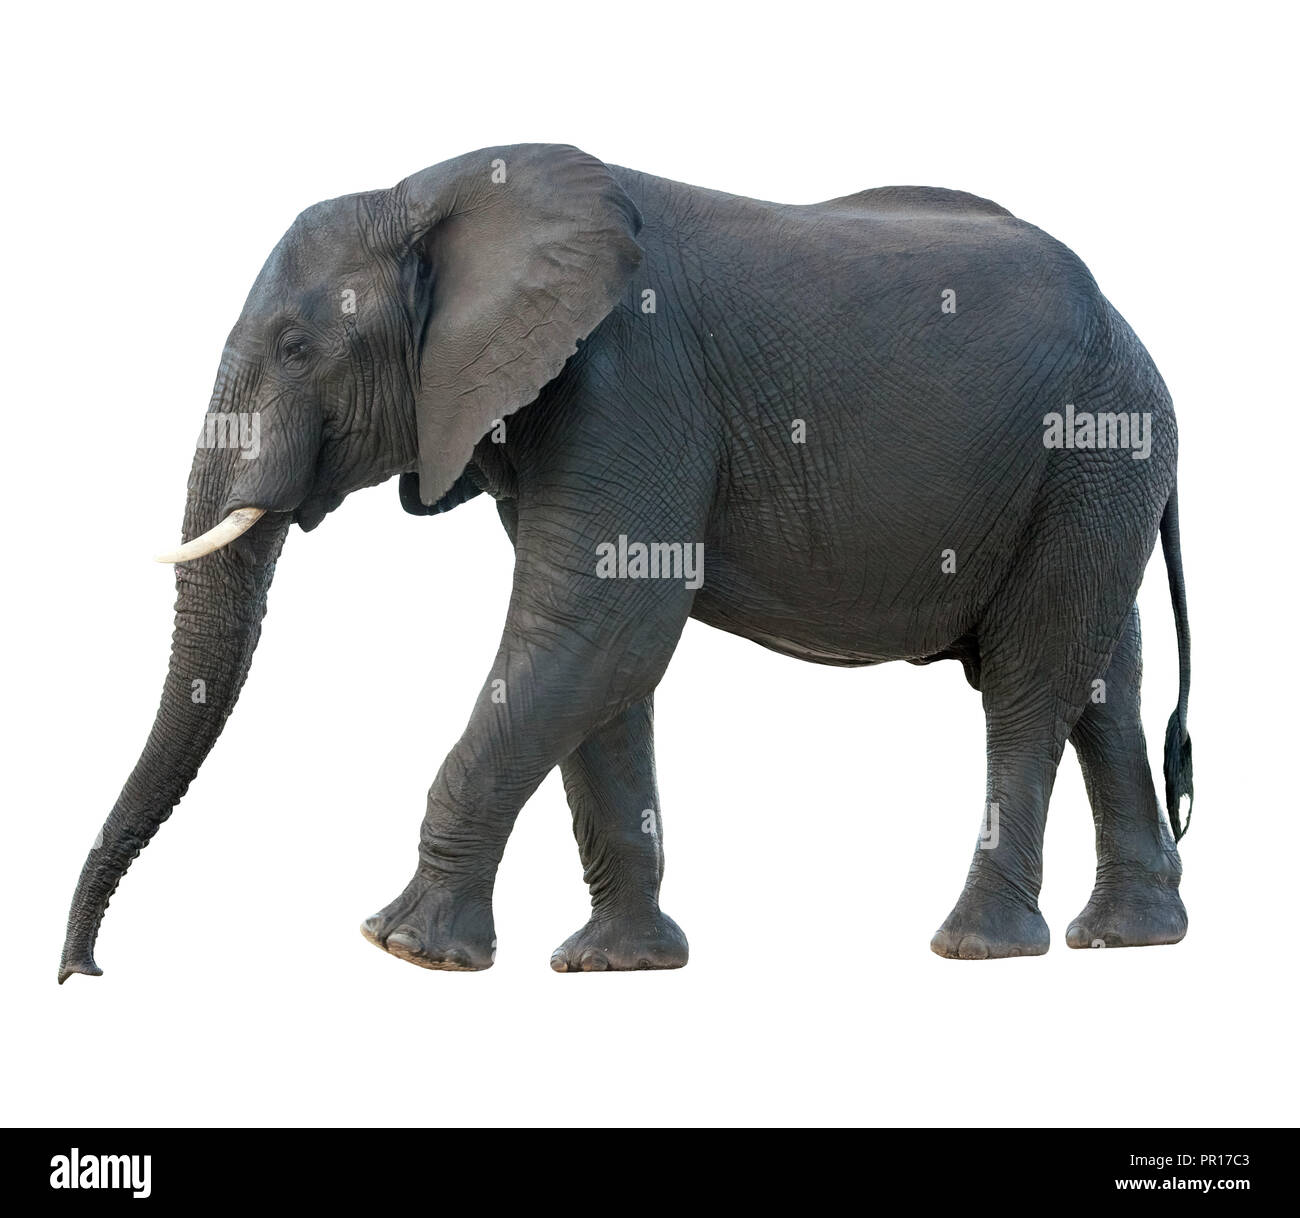 Vue latérale d'un homme wet'éléphant africain (Loxodonta africana) balade Banque D'Images